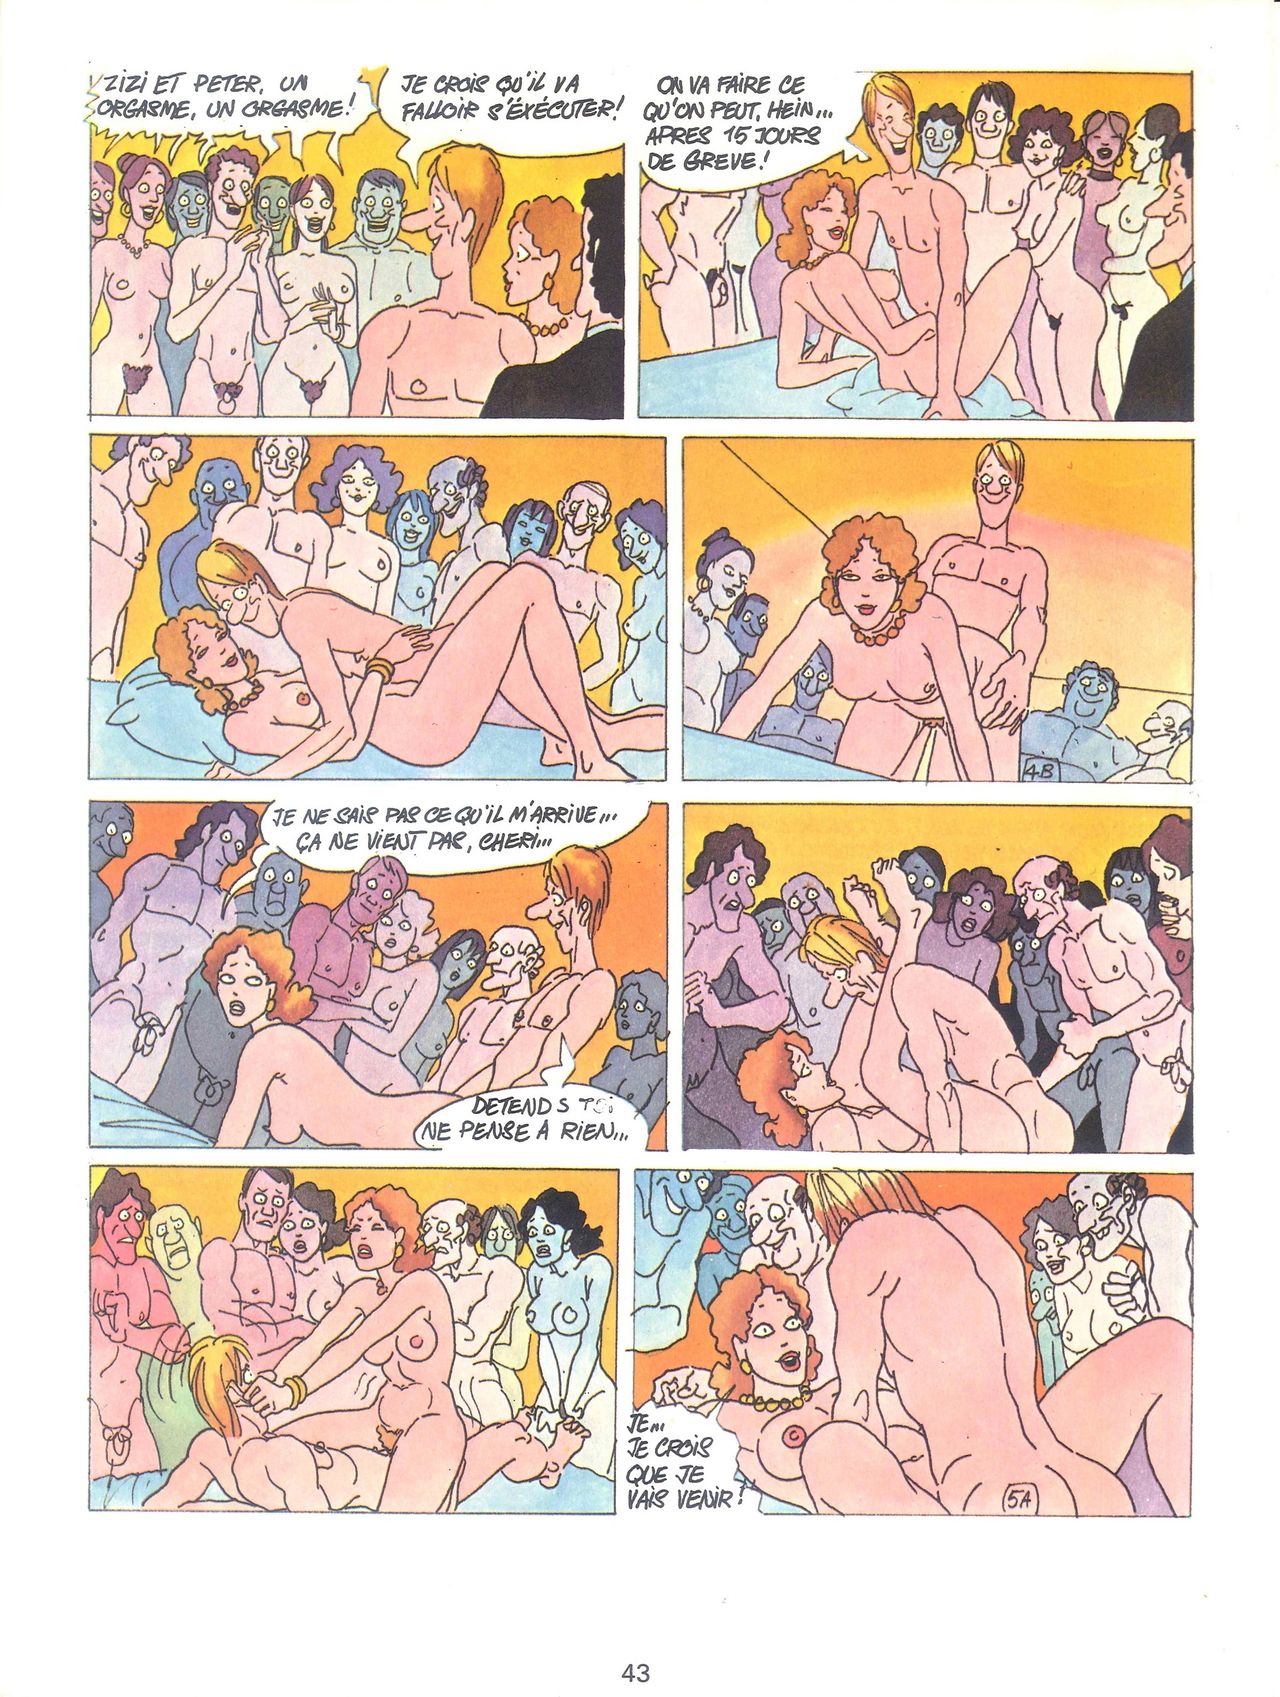 Les sextraordinaires aventures de Zizi et Peter Panpan numero d'image 45